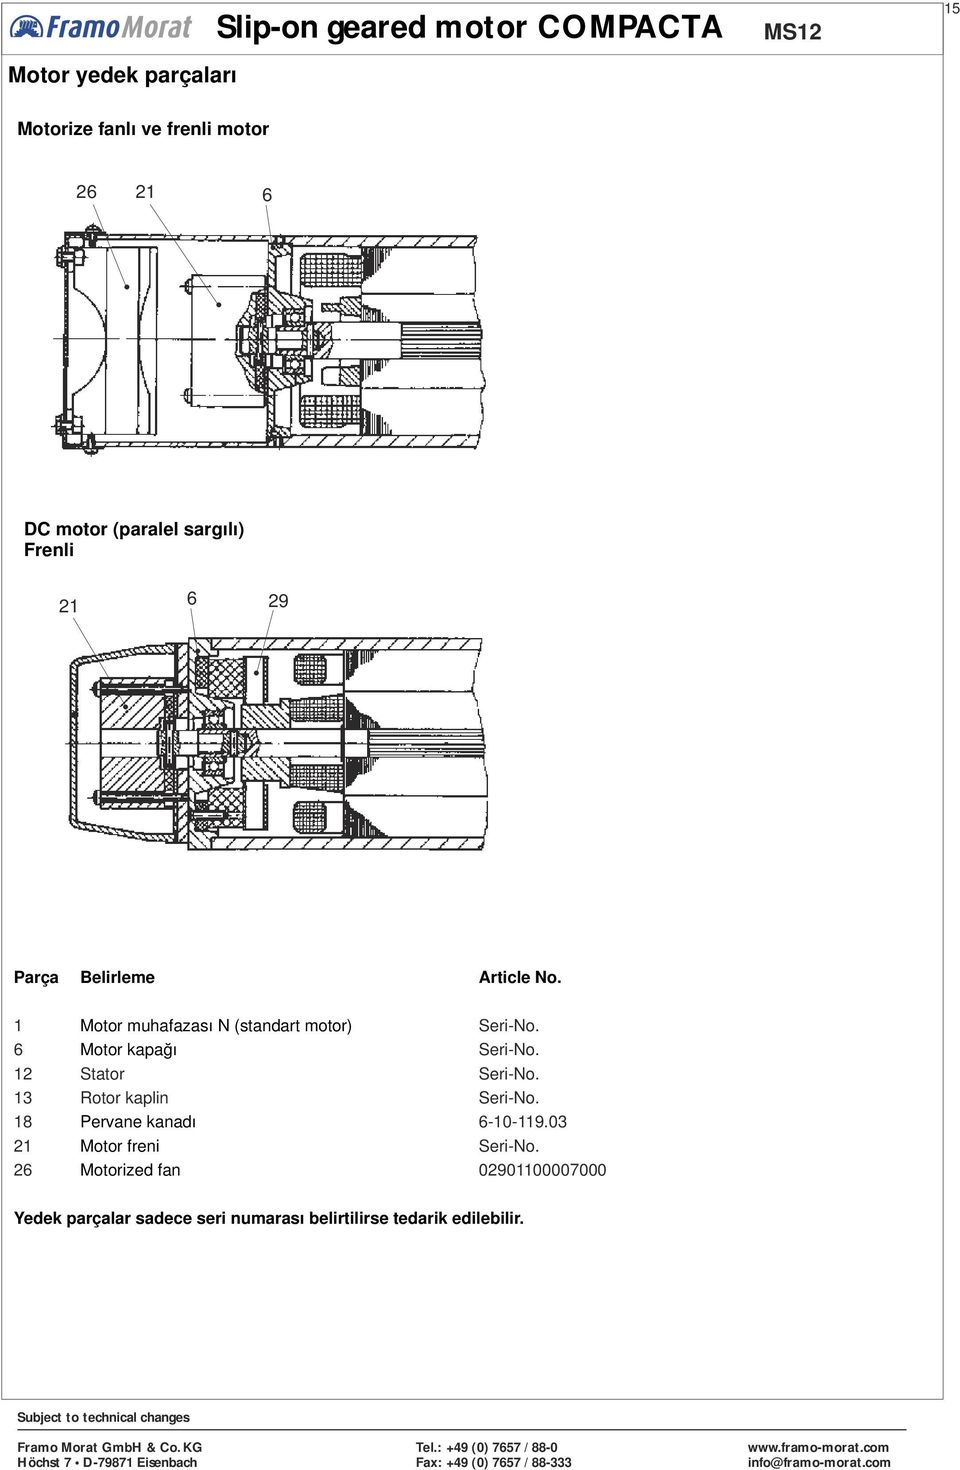 1 6 12 Motor muhafazası N (standart motor) Motor kapağı Stator Seri-No. Seri-No. Seri-No. 13 Rotor kaplin Seri-No.